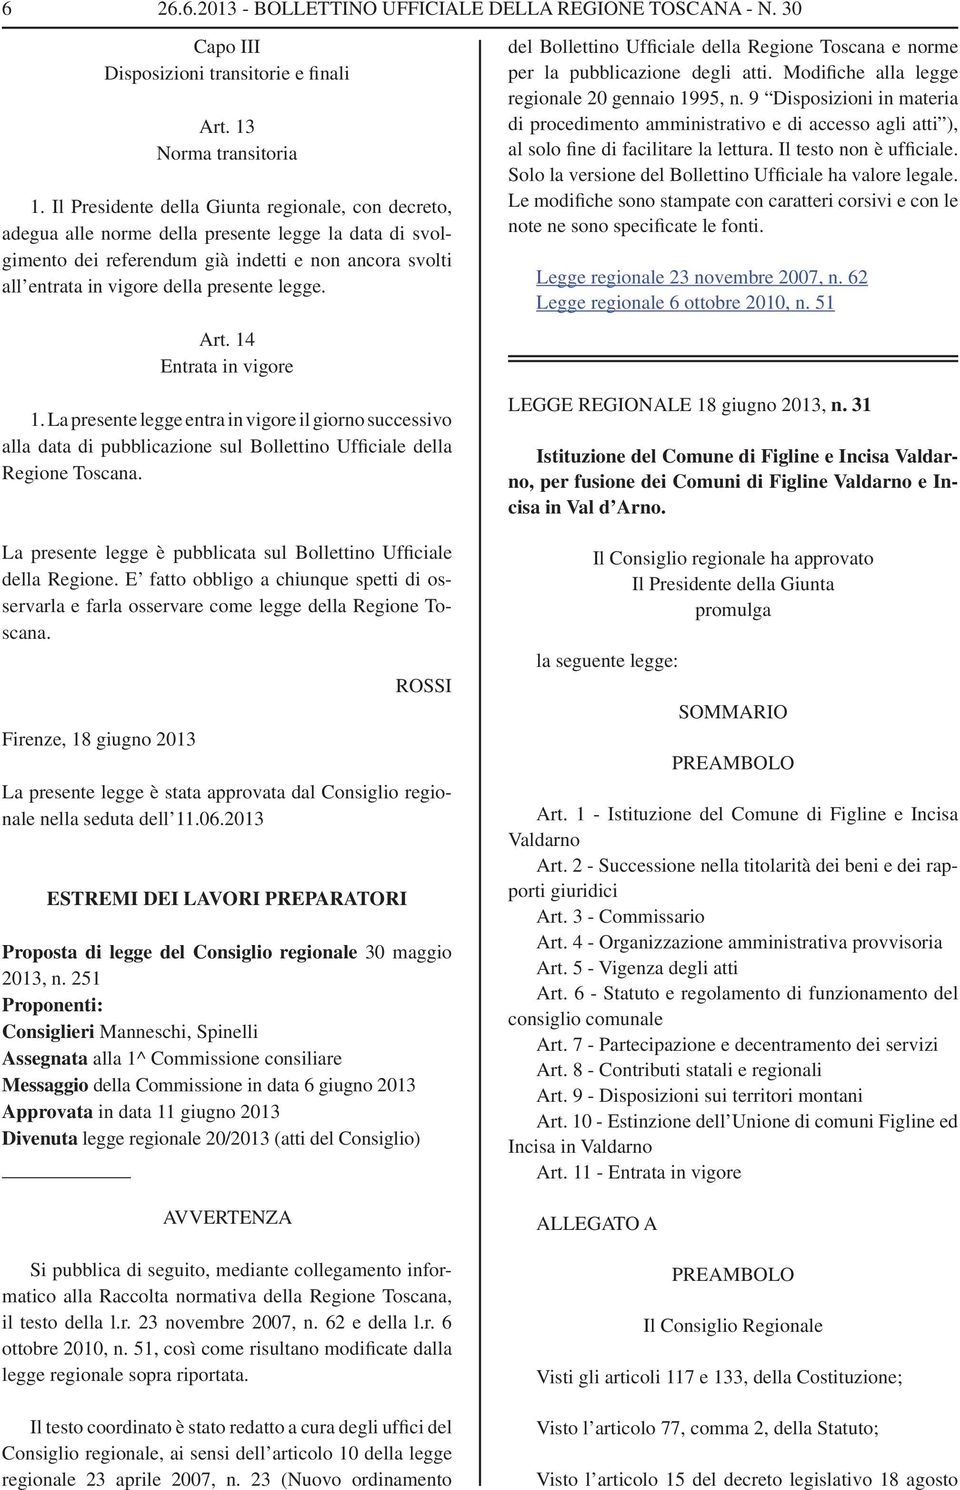 legge. Art. 14 Entrata in vigore 1. La presente legge entra in vigore il giorno successivo alla data di pubblicazione sul Bollettino Ufficiale della Regione Toscana.